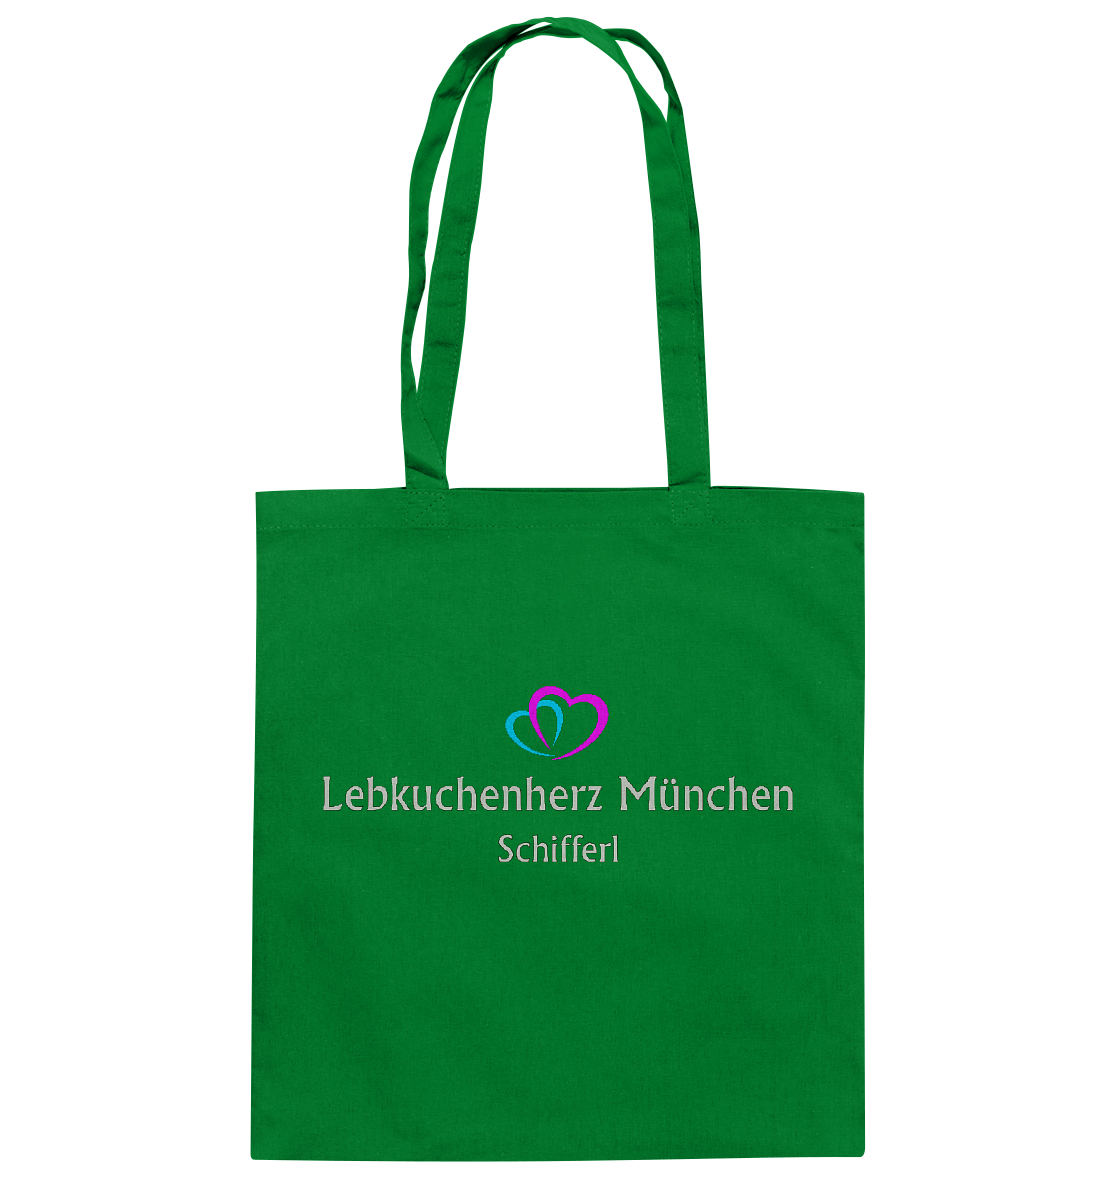 Baumwolltasche mit eigenem Logo 1 - Baumwolltasche - Online Kaufhaus München